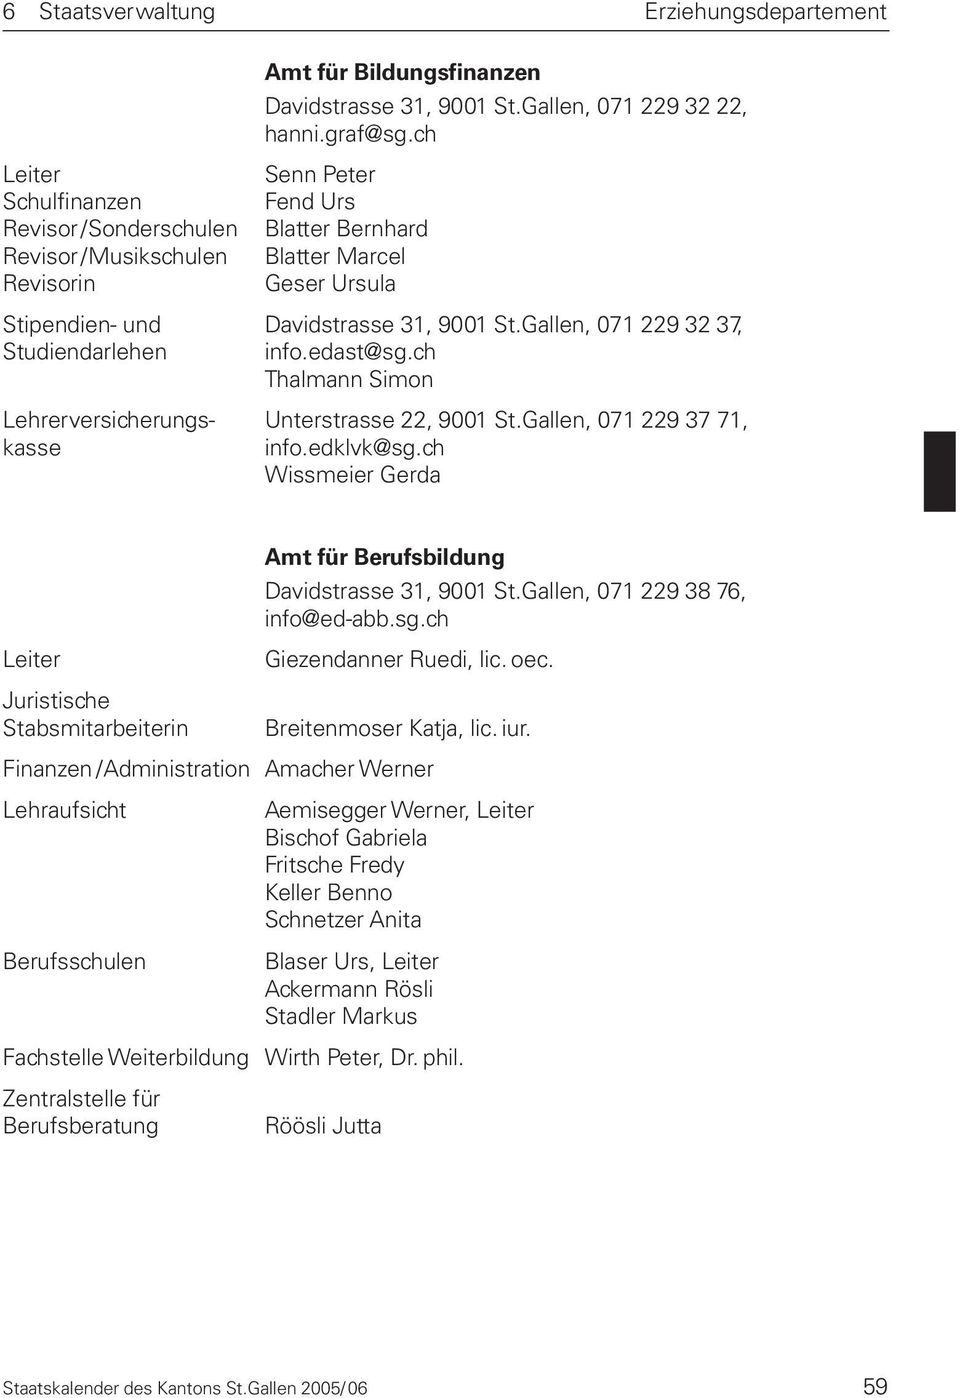 Gallen, 071 229 32 37, Studiendarlehen info.edast@sg.ch Thalmann Simon Lehrerversicherungs- Unterstrasse 22, 9001 St.Gallen, 071 229 37 71, kasse info.edklvk@sg.